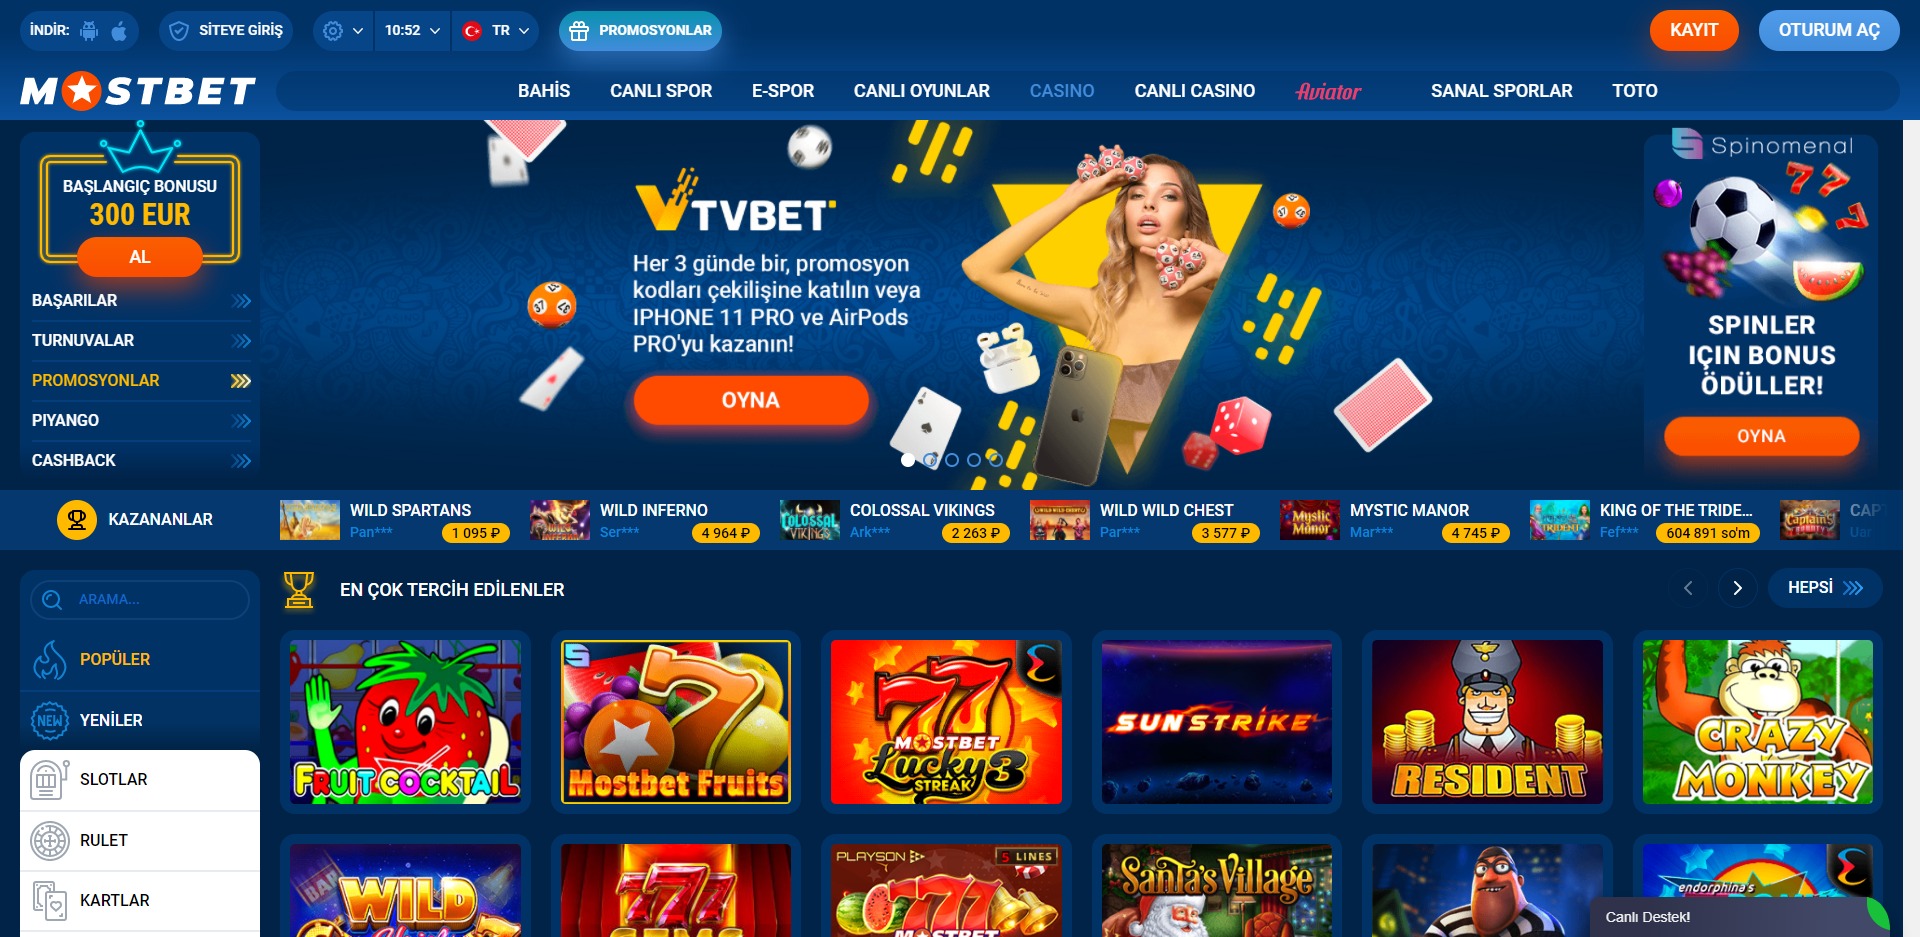 Casino mostbet appspot казино вулкан москва официальный сайт